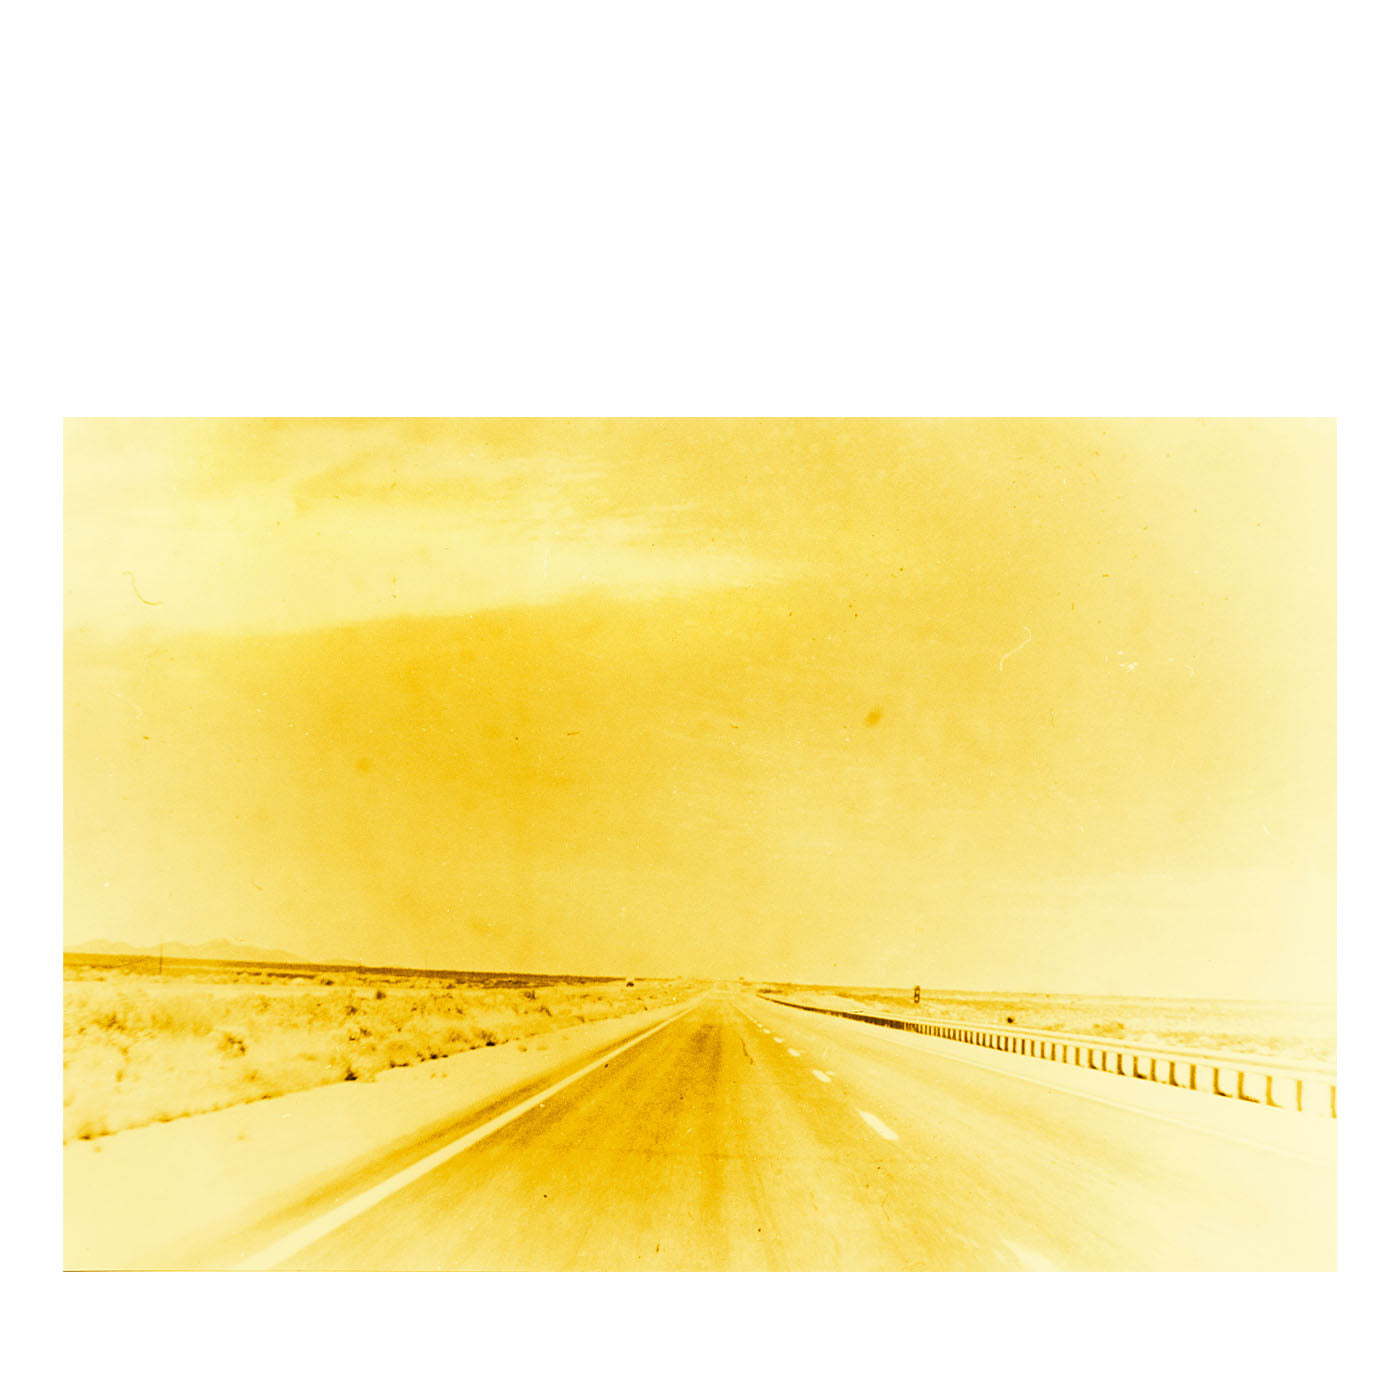 Die hungrigen Jahre. Yellow Road Sammleredition von Jack Pierson - Alternative Ansicht 1